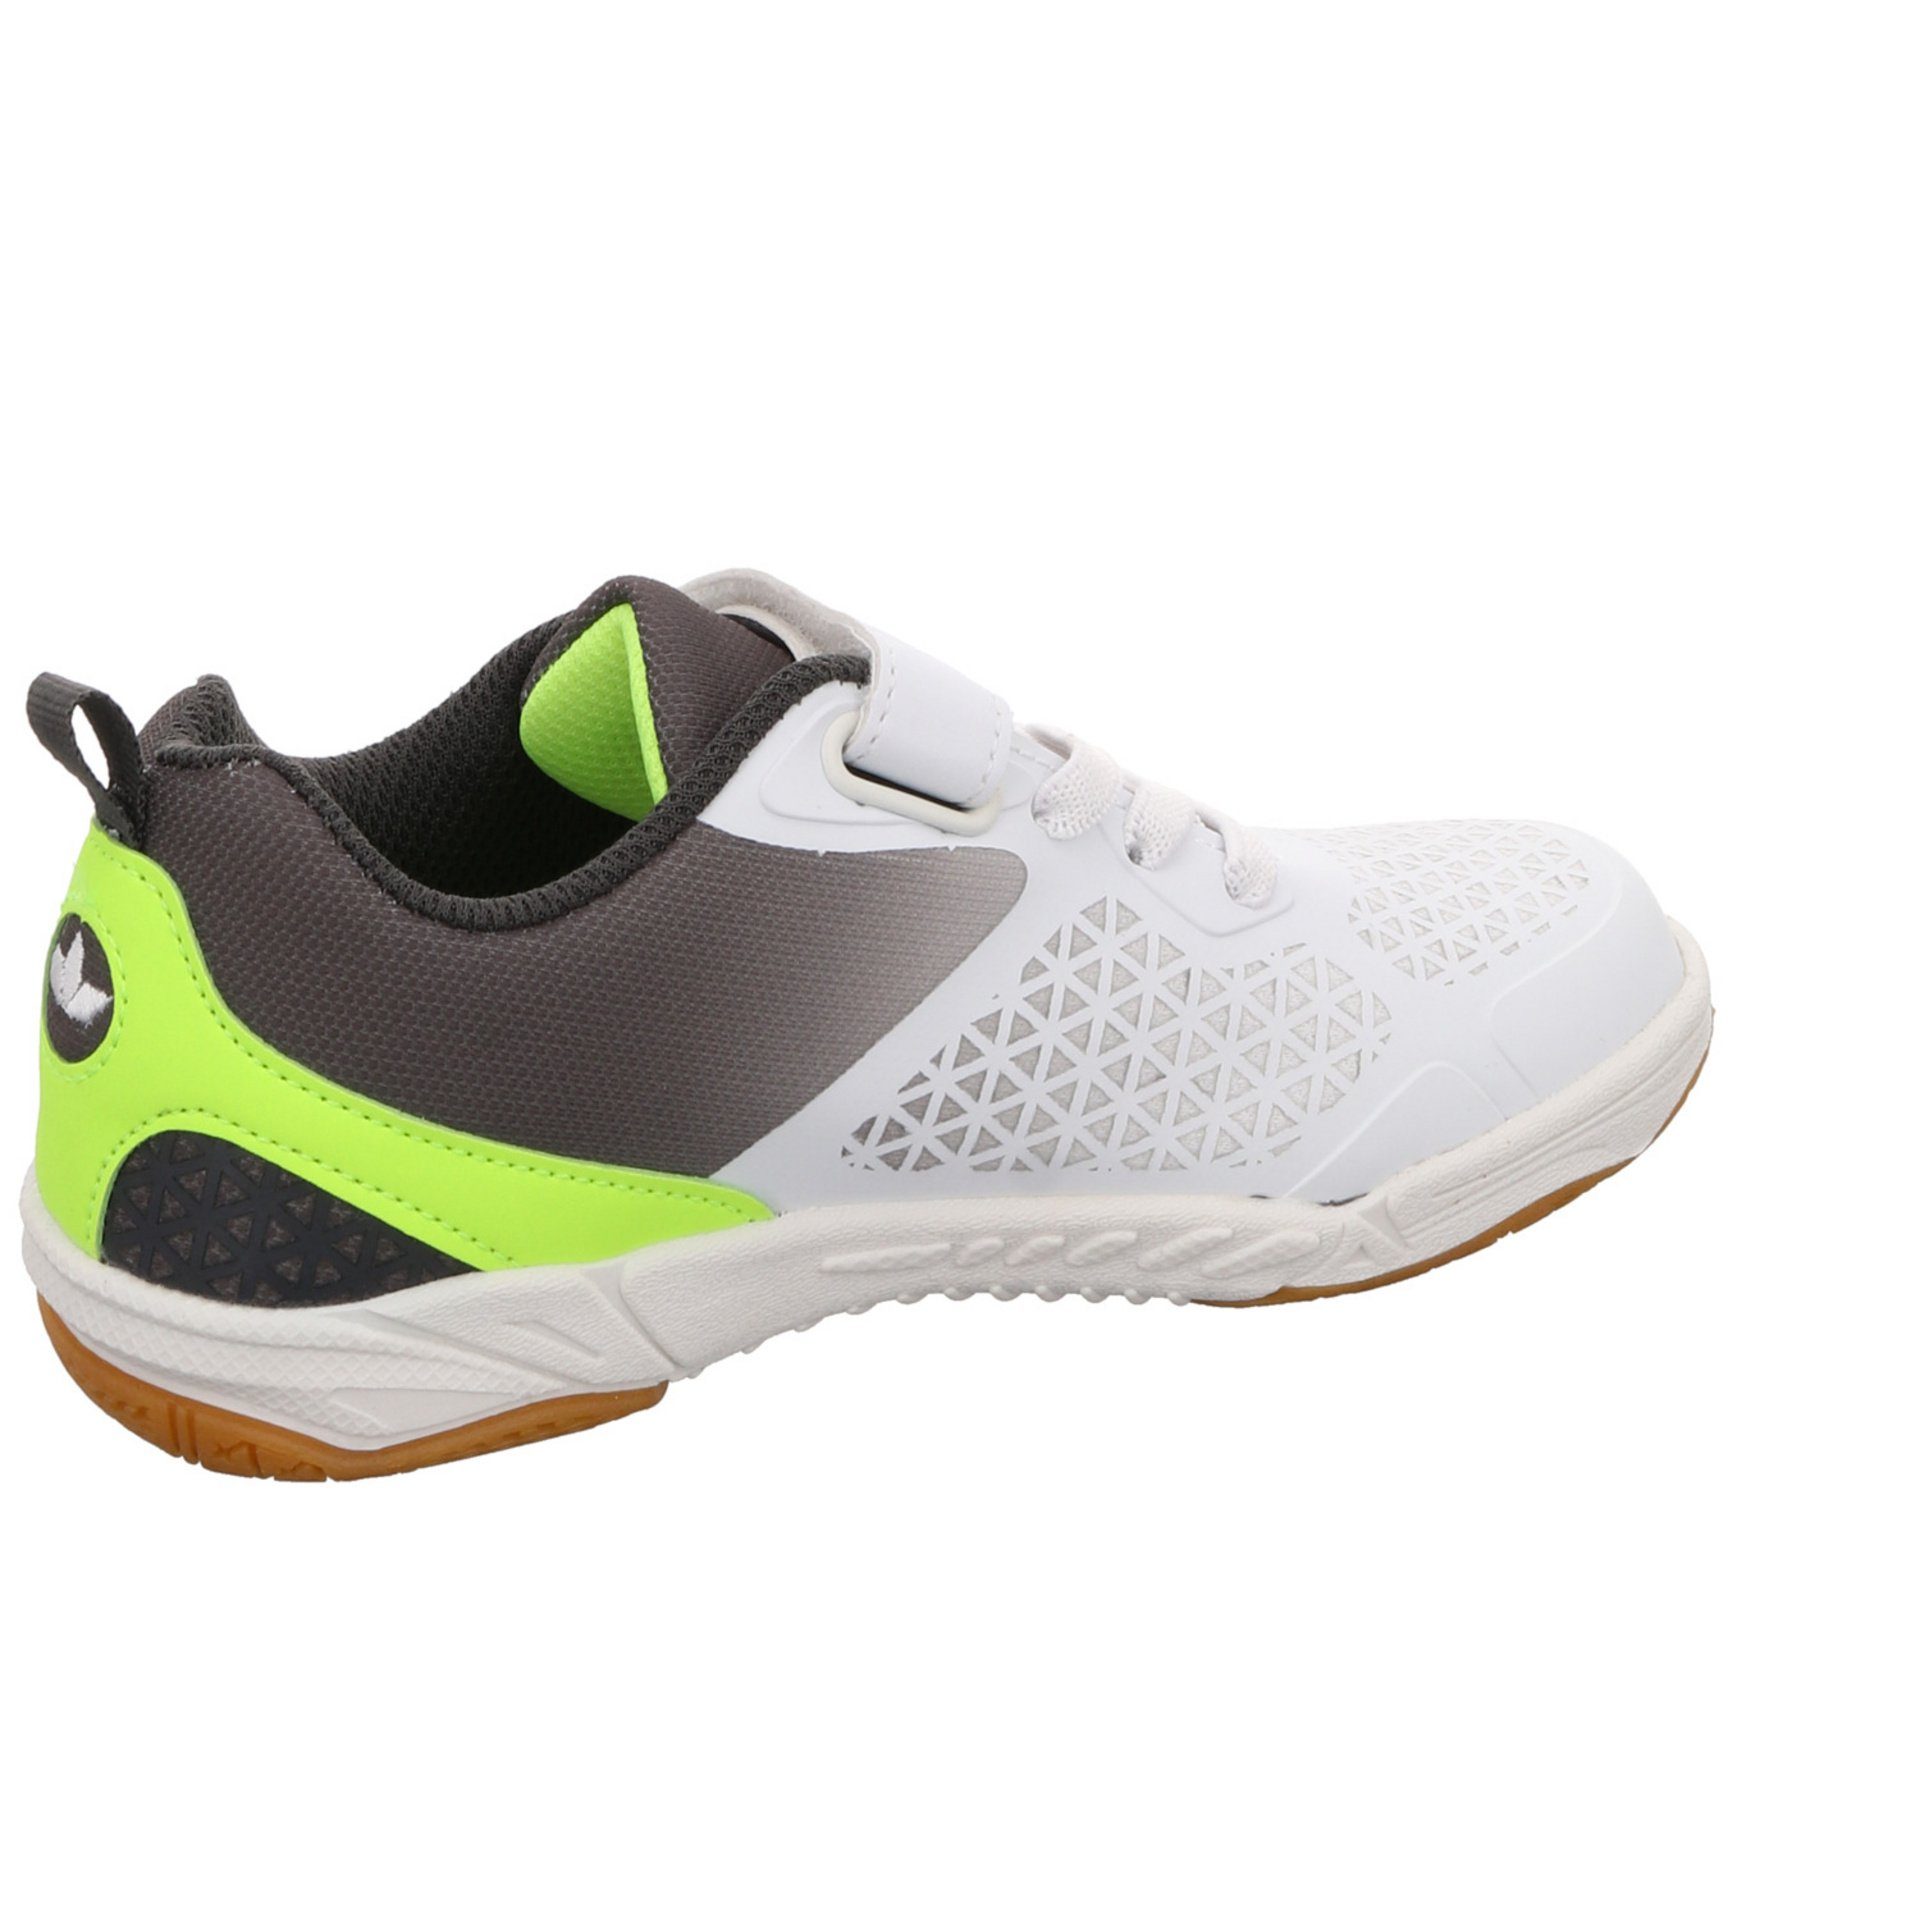 Lico weiss/grau/lemon Kit Sneaker Synthetikkombination Synthetikkombination gemustert VS Sneaker